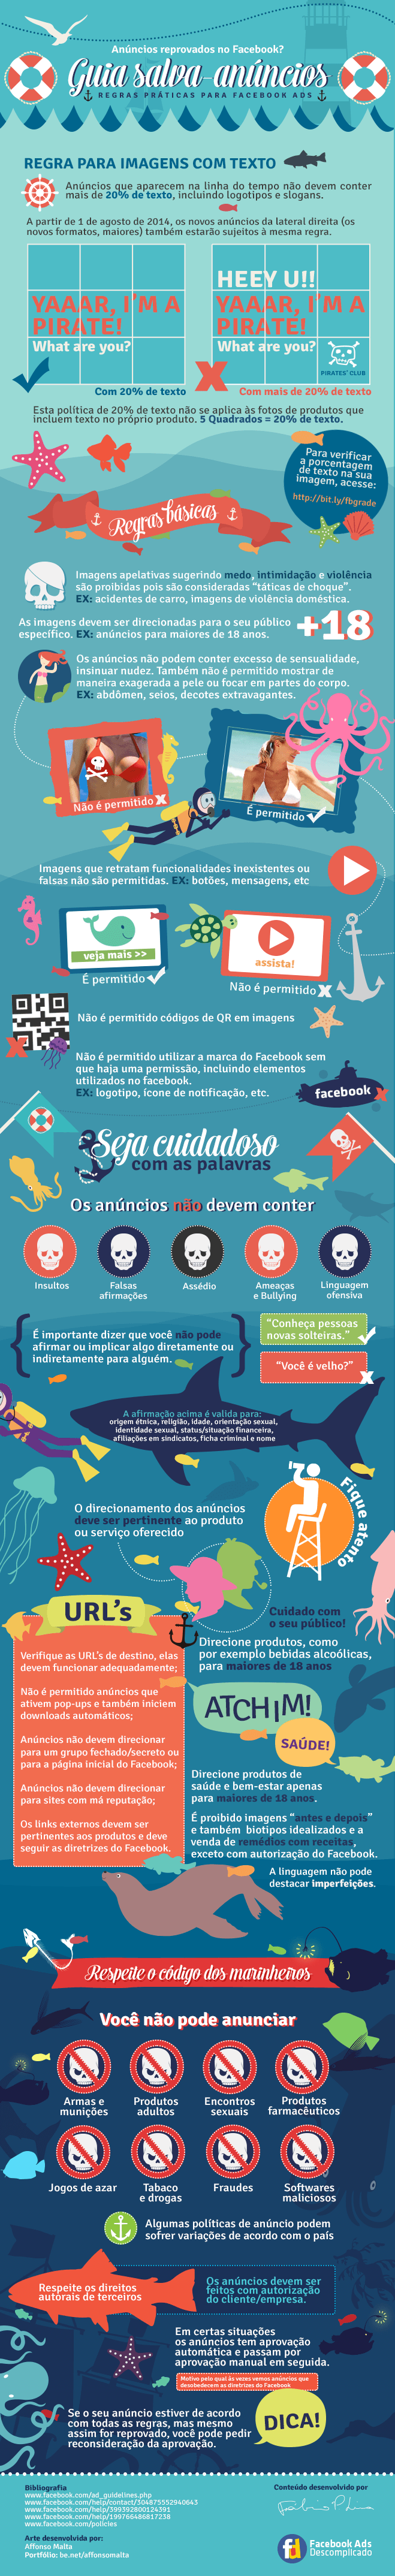 infografico-guia-salva-anuncios-facebook